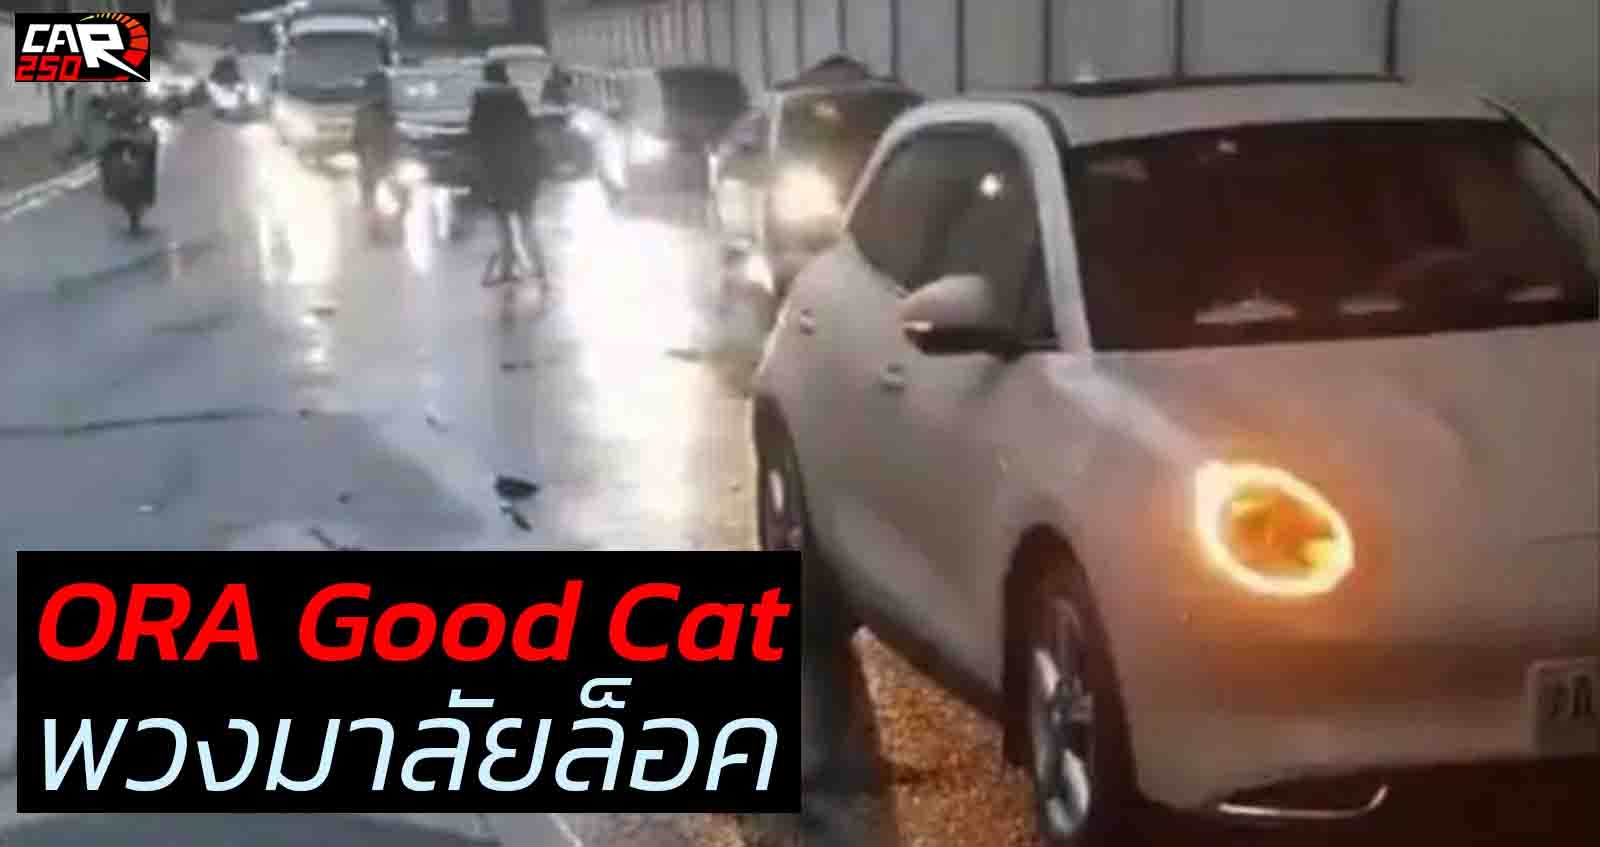 เกิดปัญหา พวงมาลัยล็อค ORA Good Cat ช่วงเช้า ในเมืองหลวงเซี่ยงไฮ้